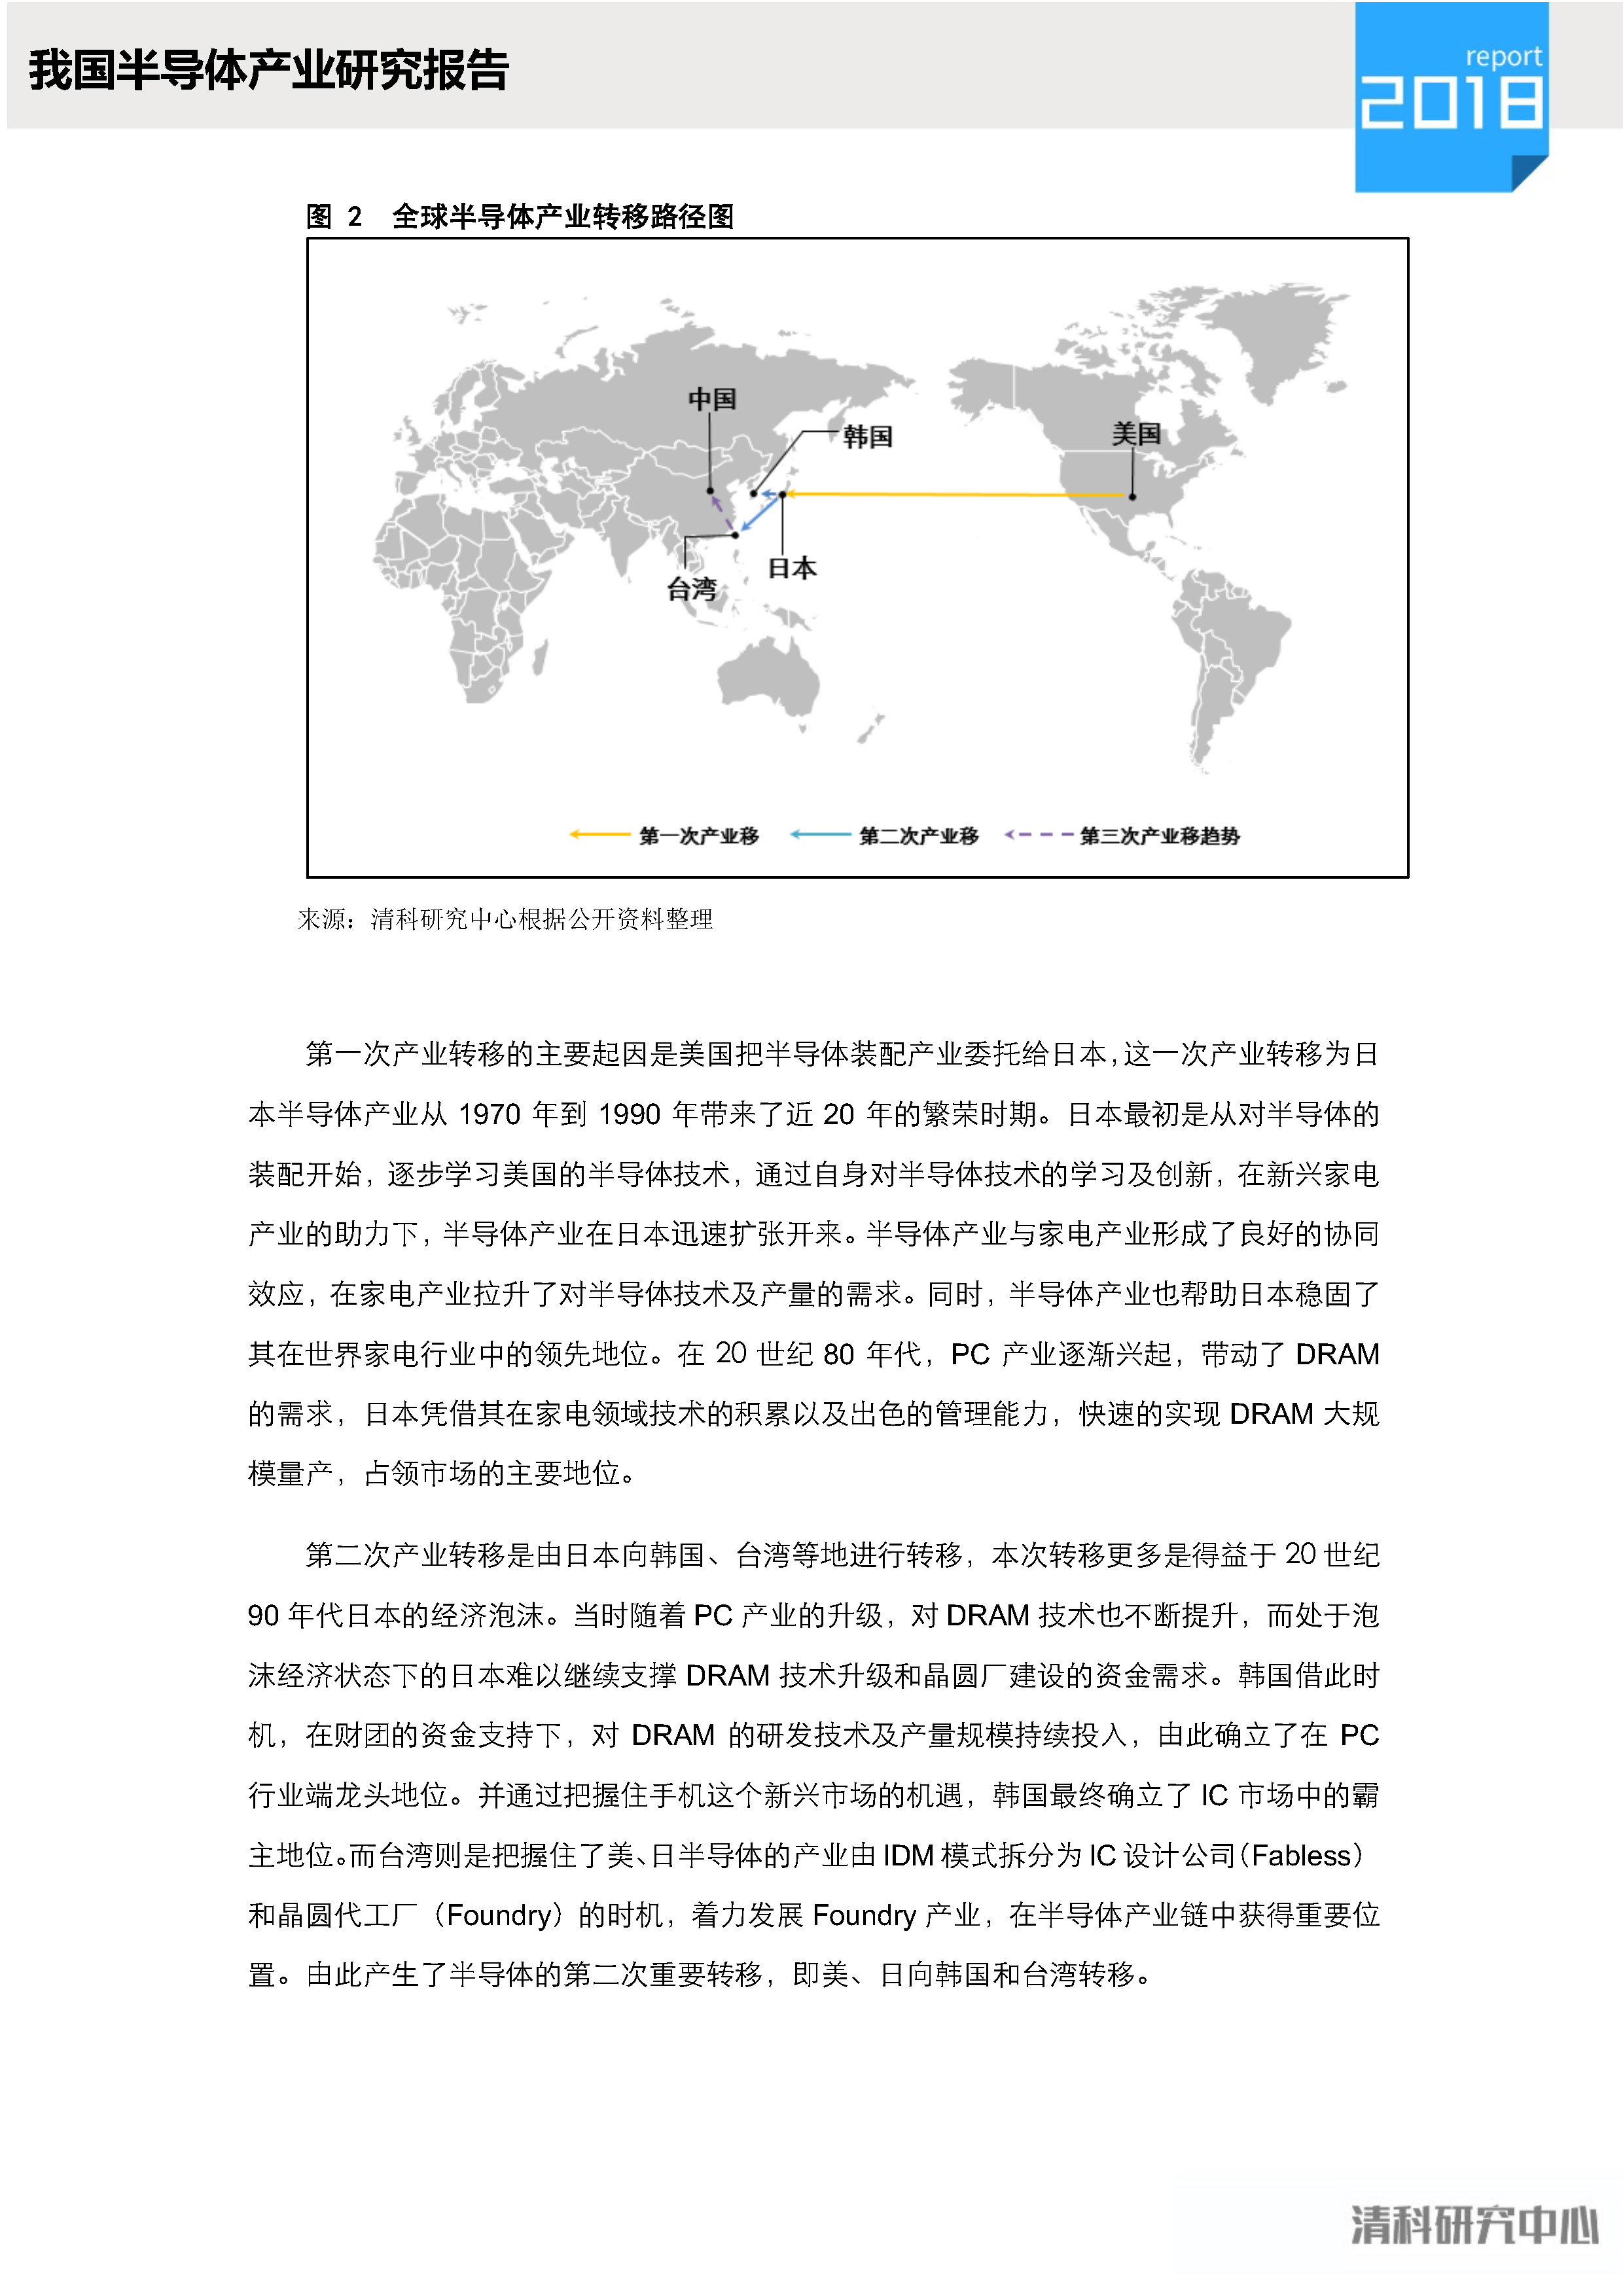 中植资本联合清科研究中心发布《中国半导体产